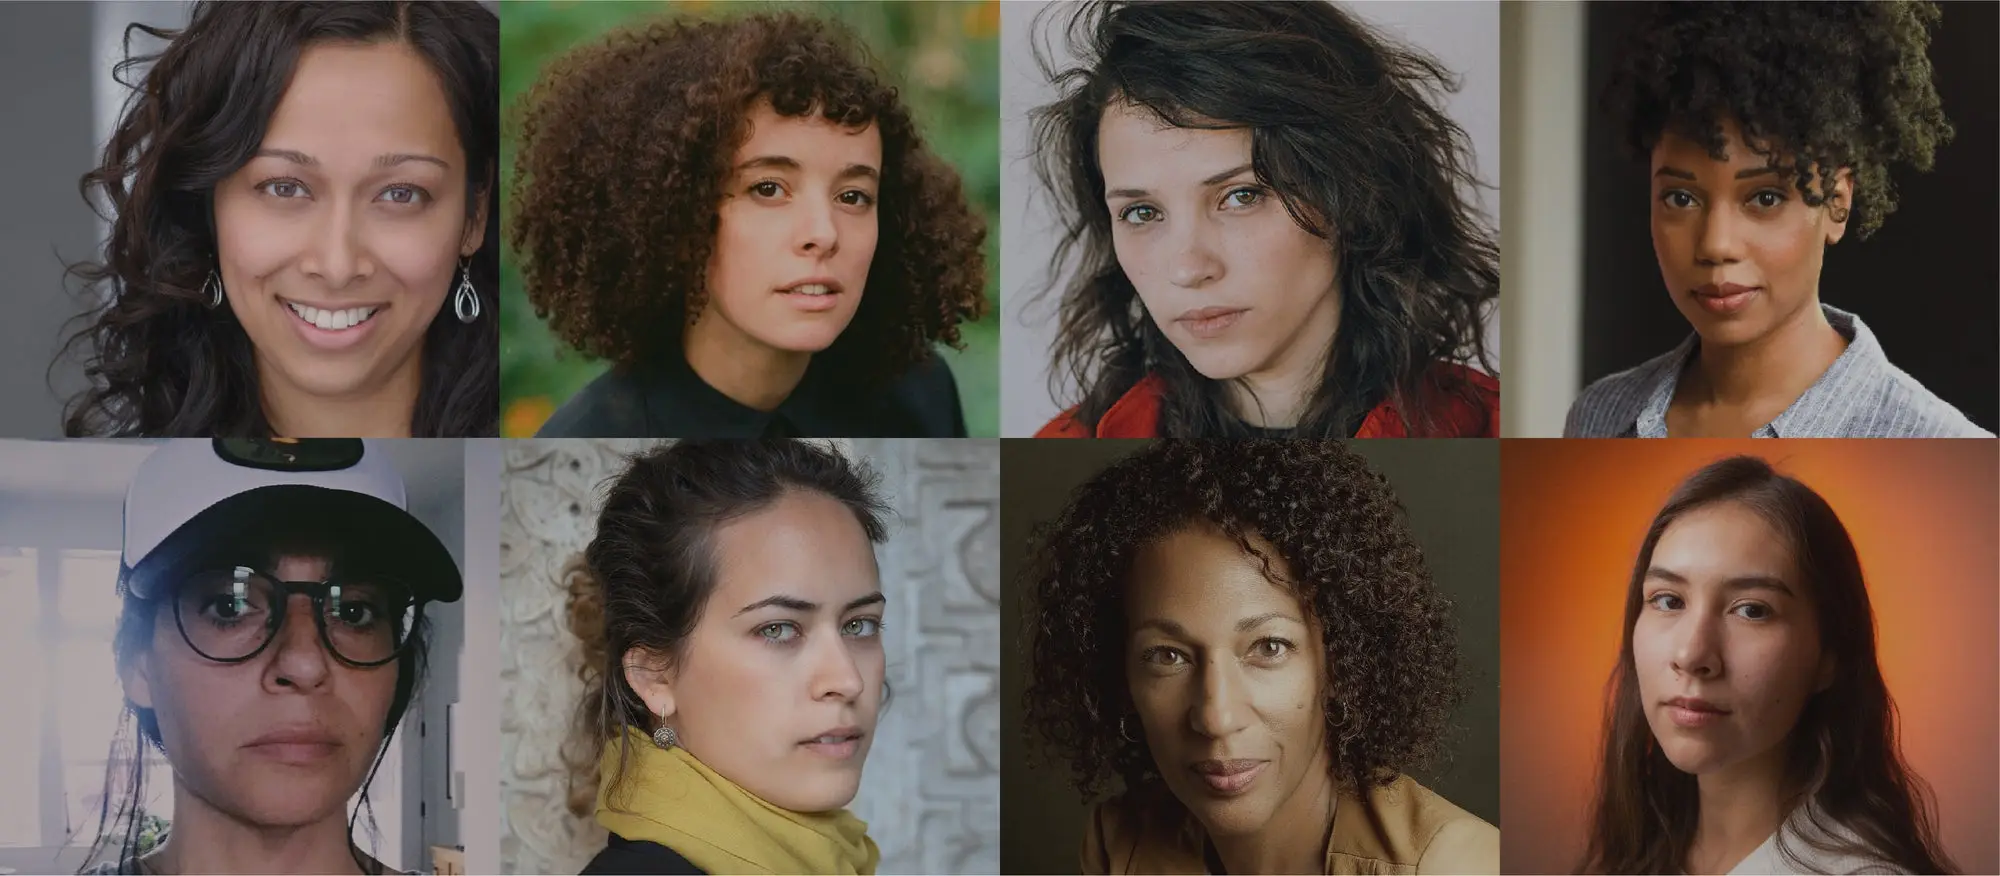 Meet the 2021 Women at Sundance-Adobe Fellows. 